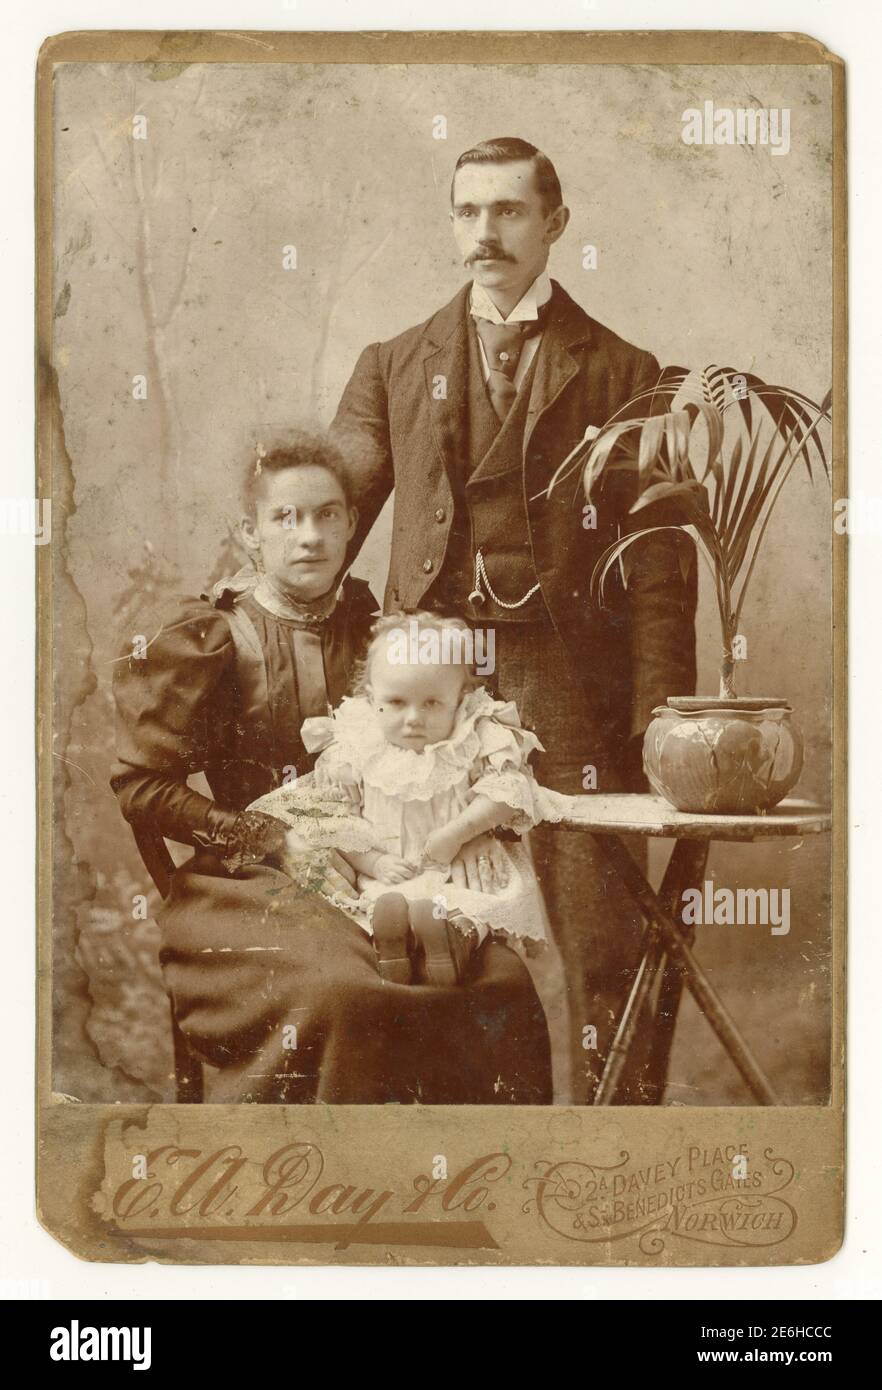 Original antique Victorian Cabinet carte portrait de studio avec la paume / maison en pot typique dans une casserole. Portrait est de jeune couple attrayant avec leur fille de bébé. Photo datée de 1895, du studio de E. A. Day & Co Norwich, Norfolk, Royaume-Uni Banque D'Images